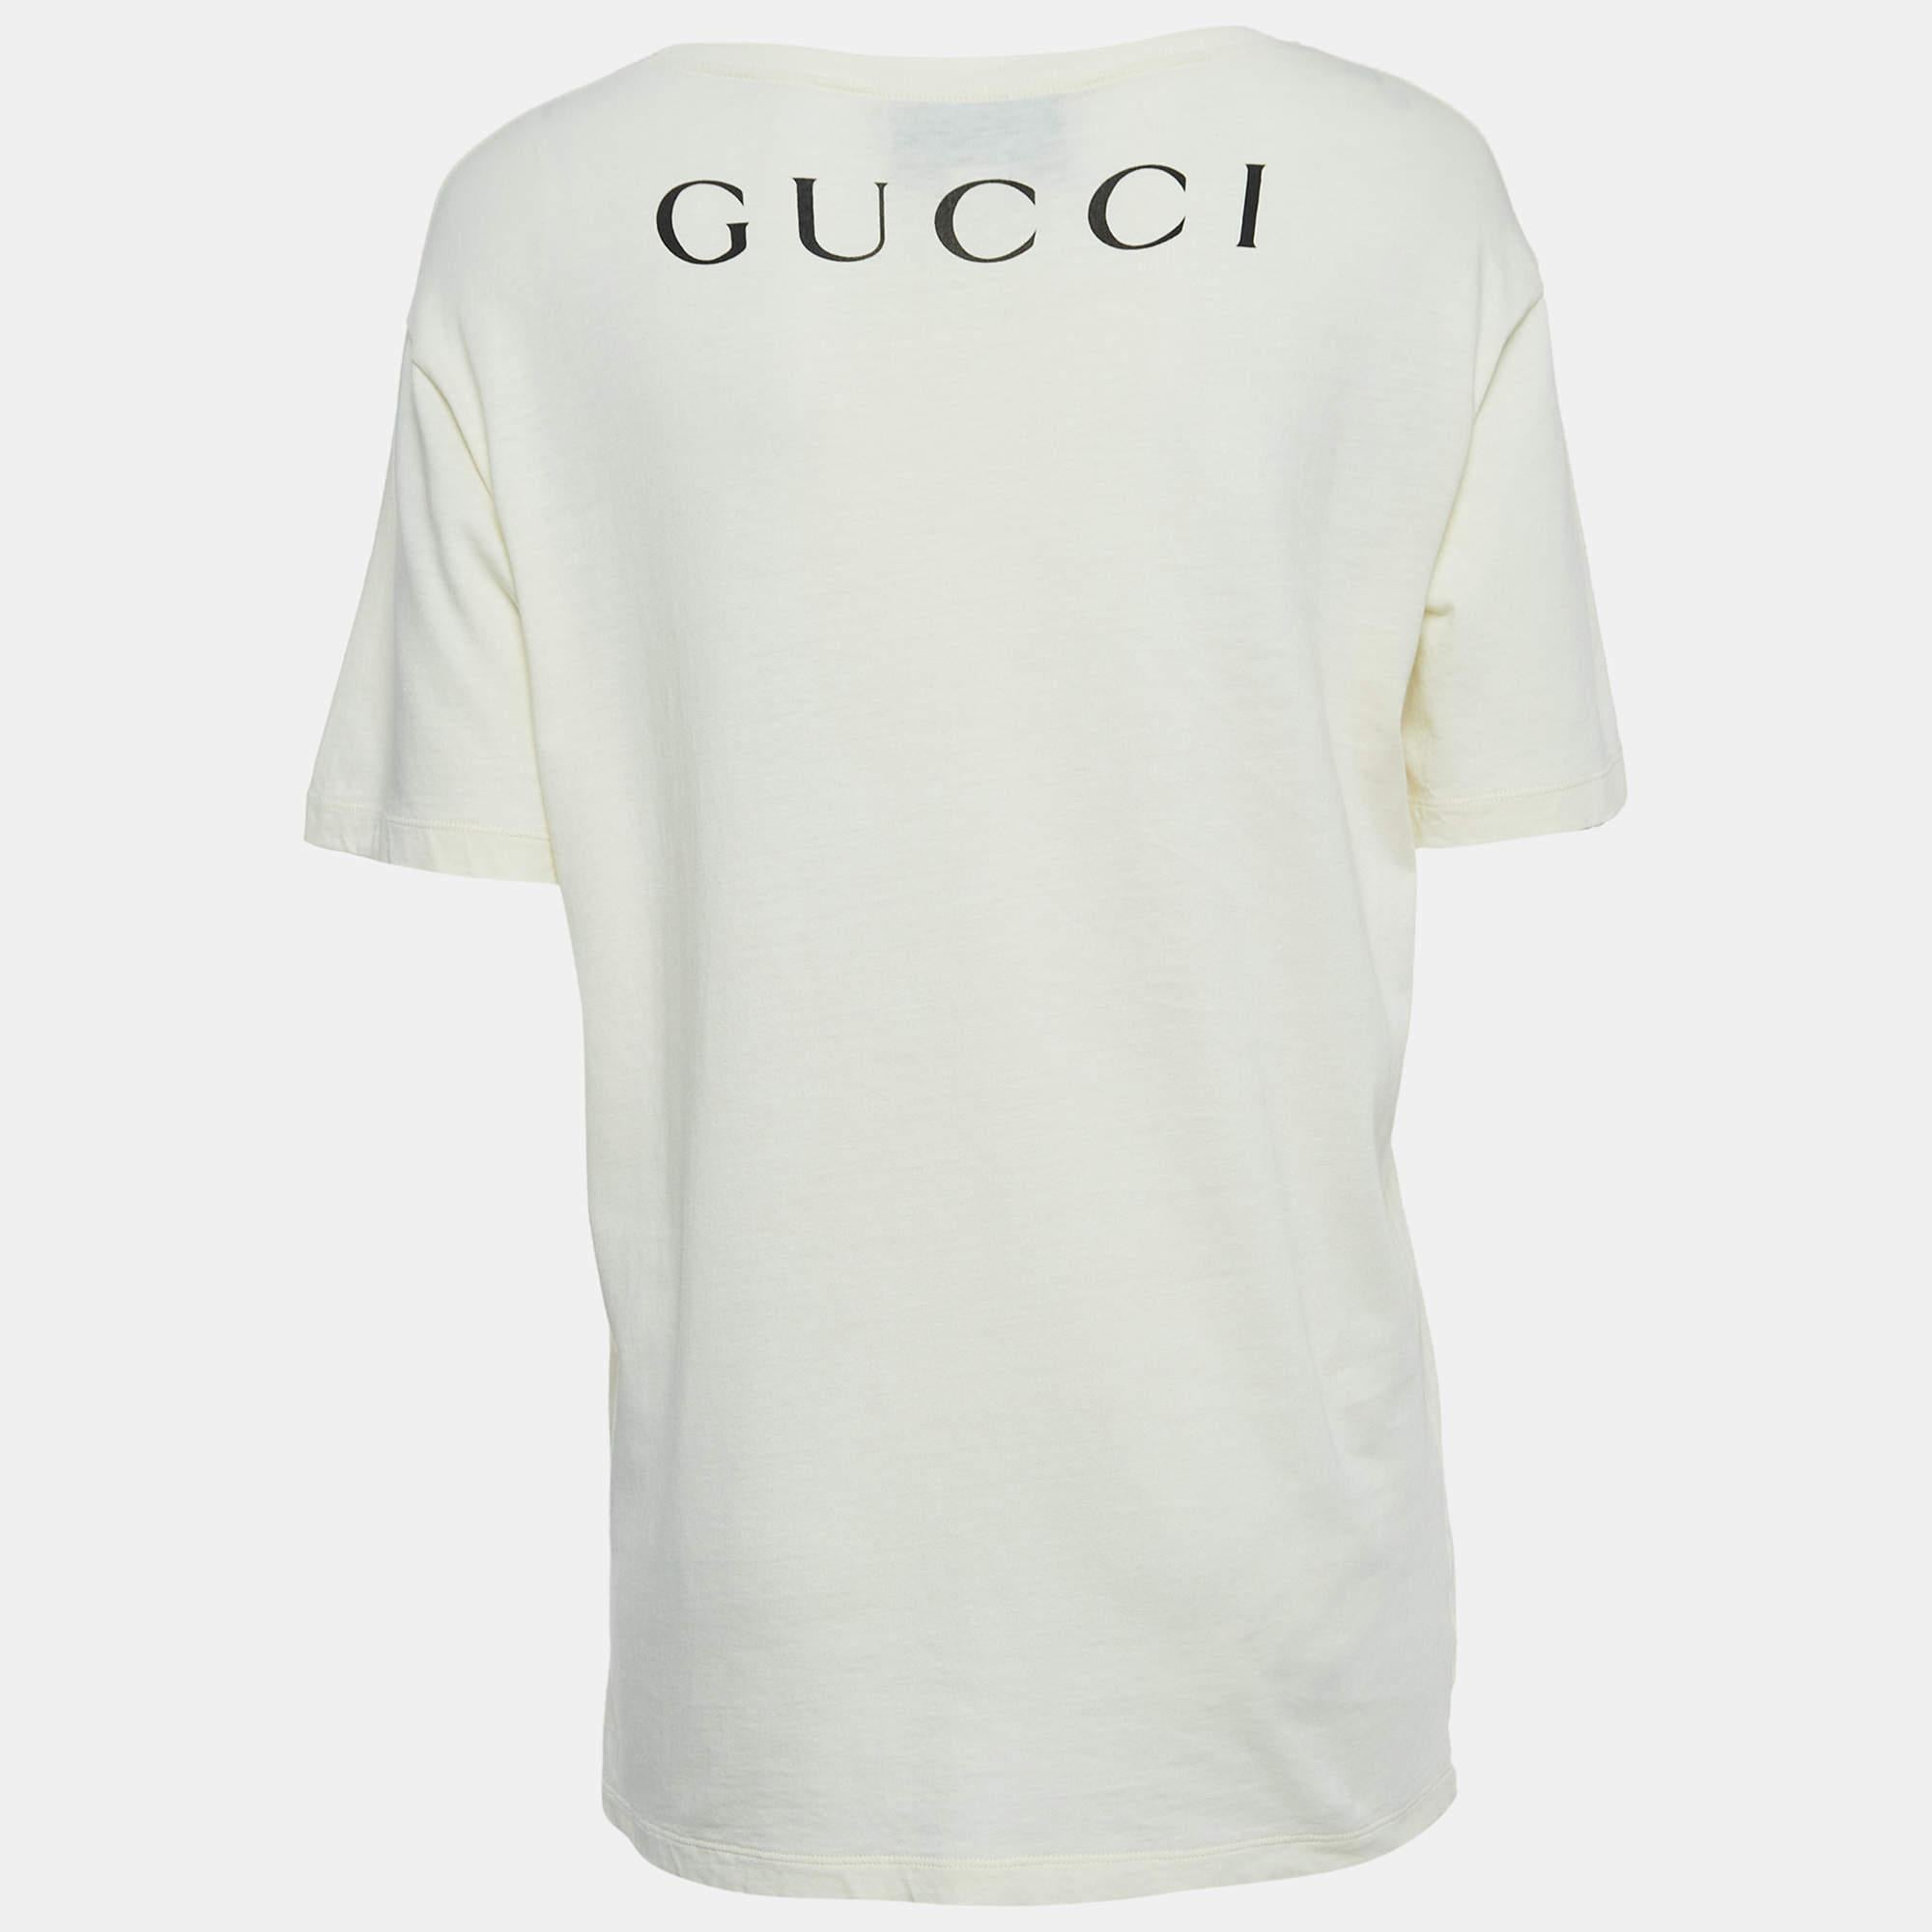 Dieses Gucci-T-Shirt ist perfekt für lässige Ausflüge oder Besorgungen und ist das beste Stück, um sich darin wohlzufühlen und stilvoll zu sein. Es hat einen auffälligen Farbton und eine lockere Passform.

